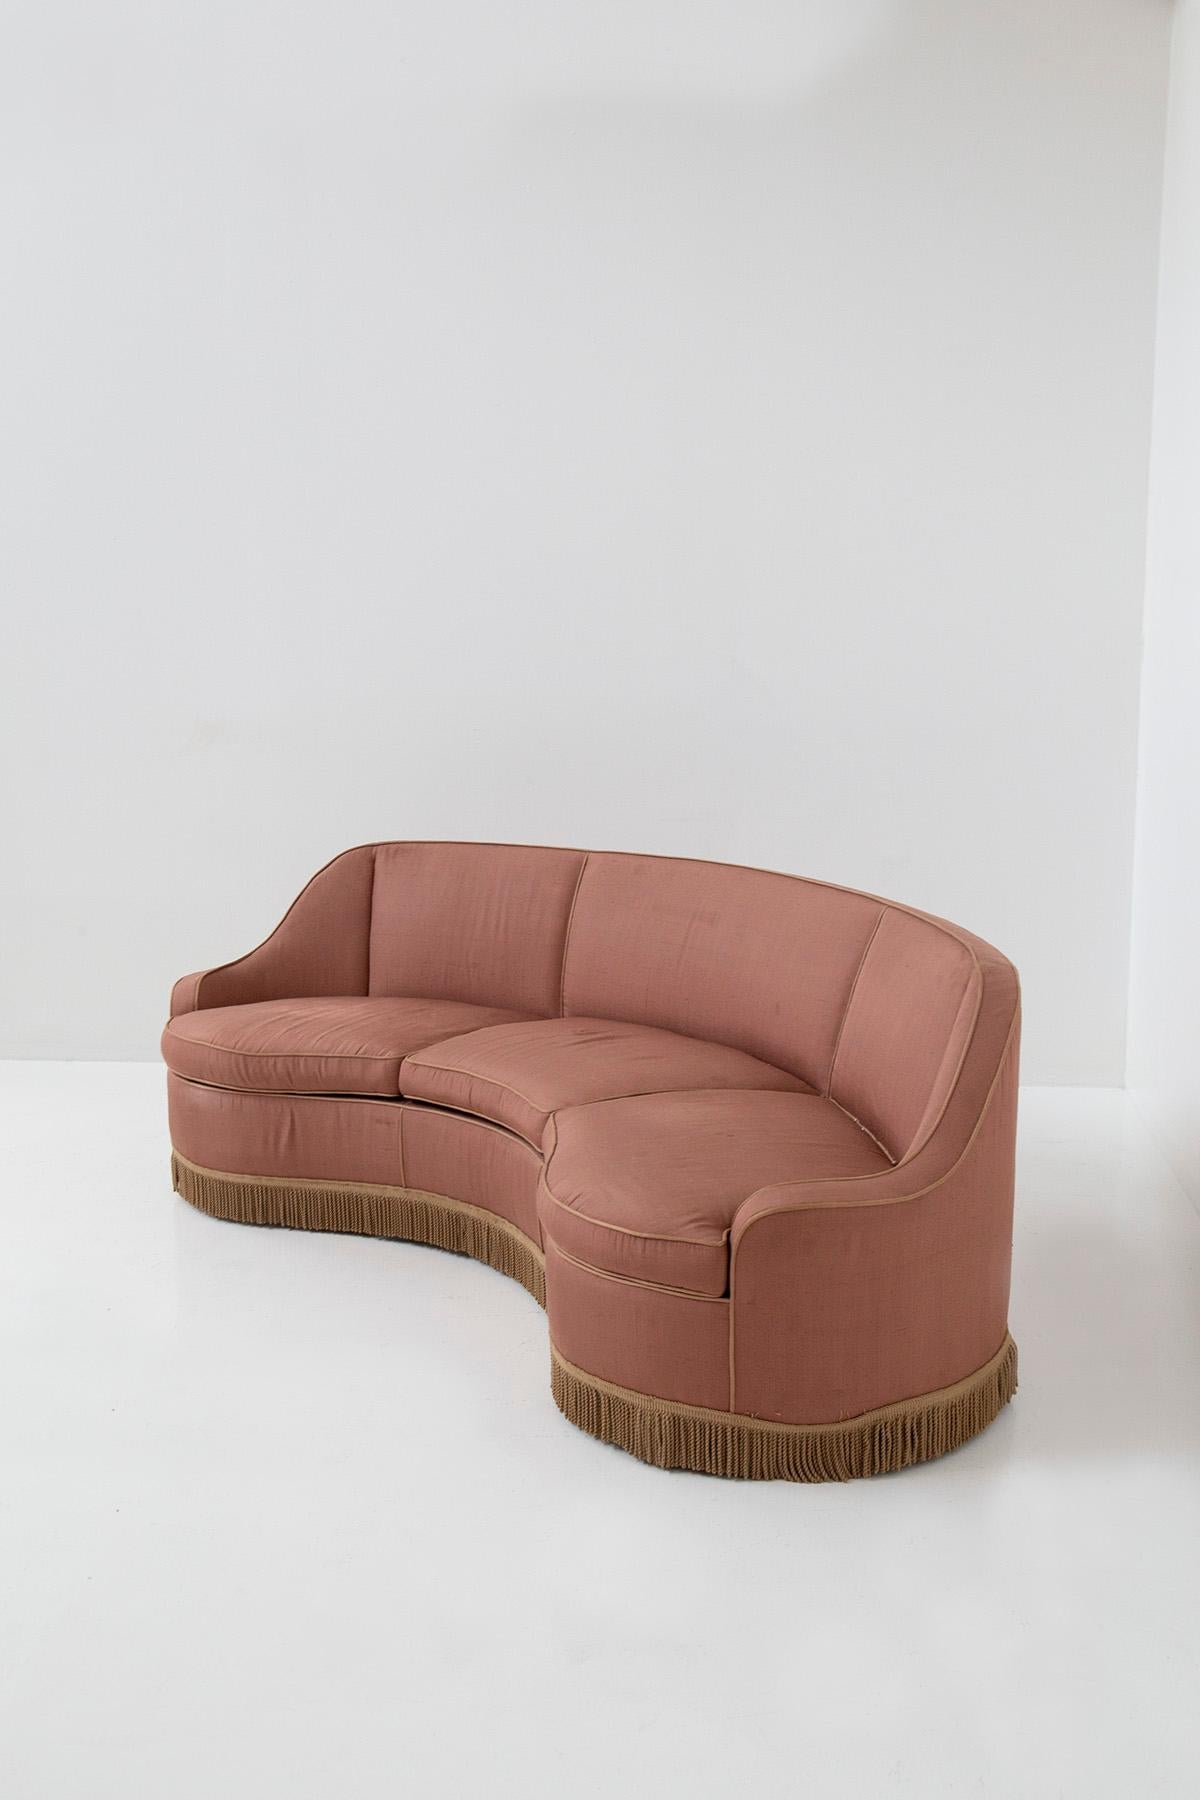 Fabric Italian three-seater sofa in pink fabric attributed to Gio Ponti